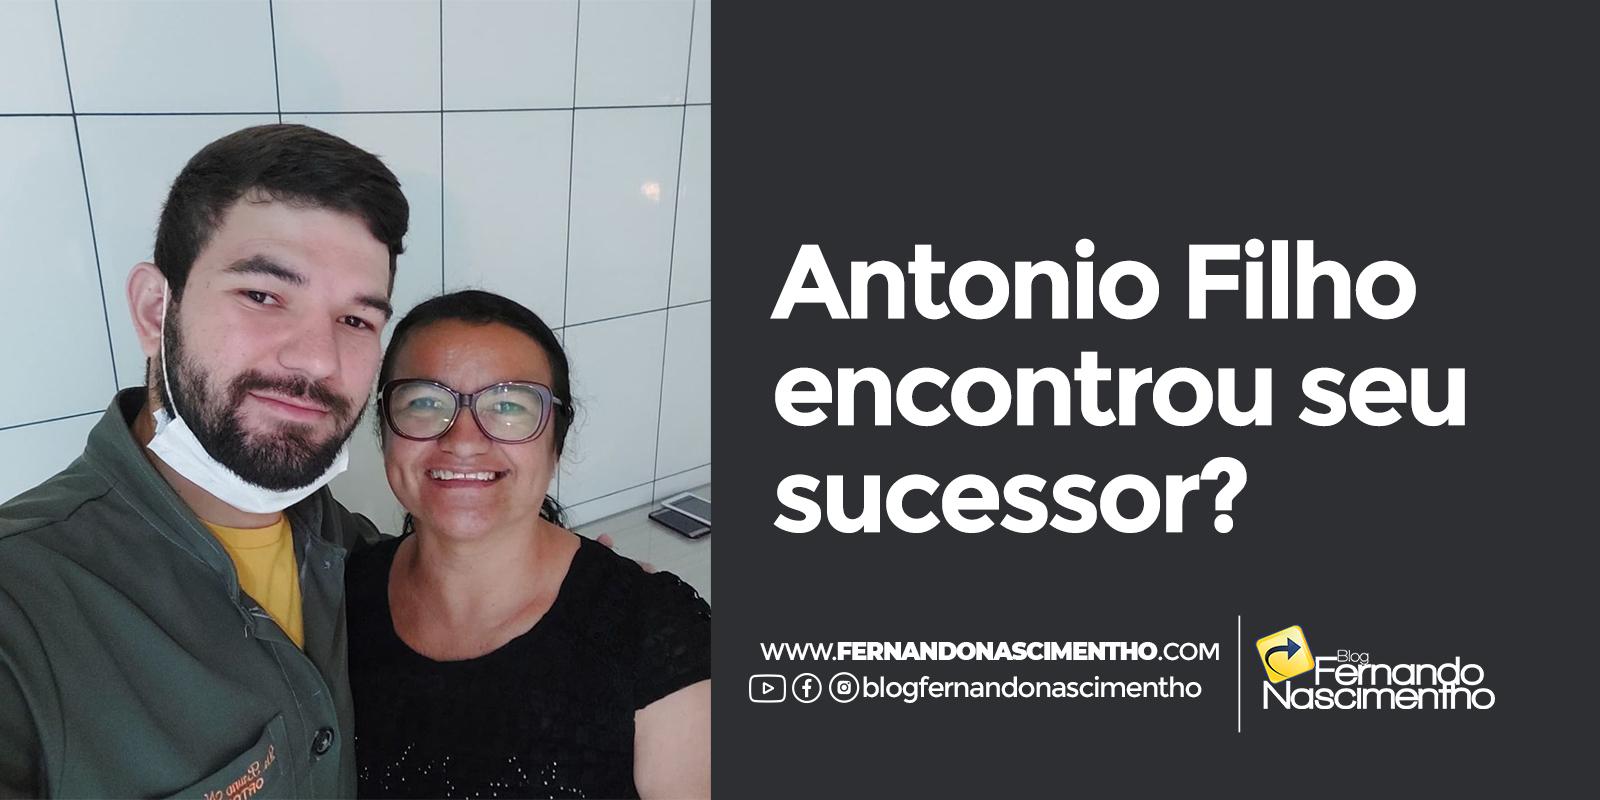 Dr. Bruno surge como principal nome na lista dos possíveis sucessores do prefeito Antonio Filho